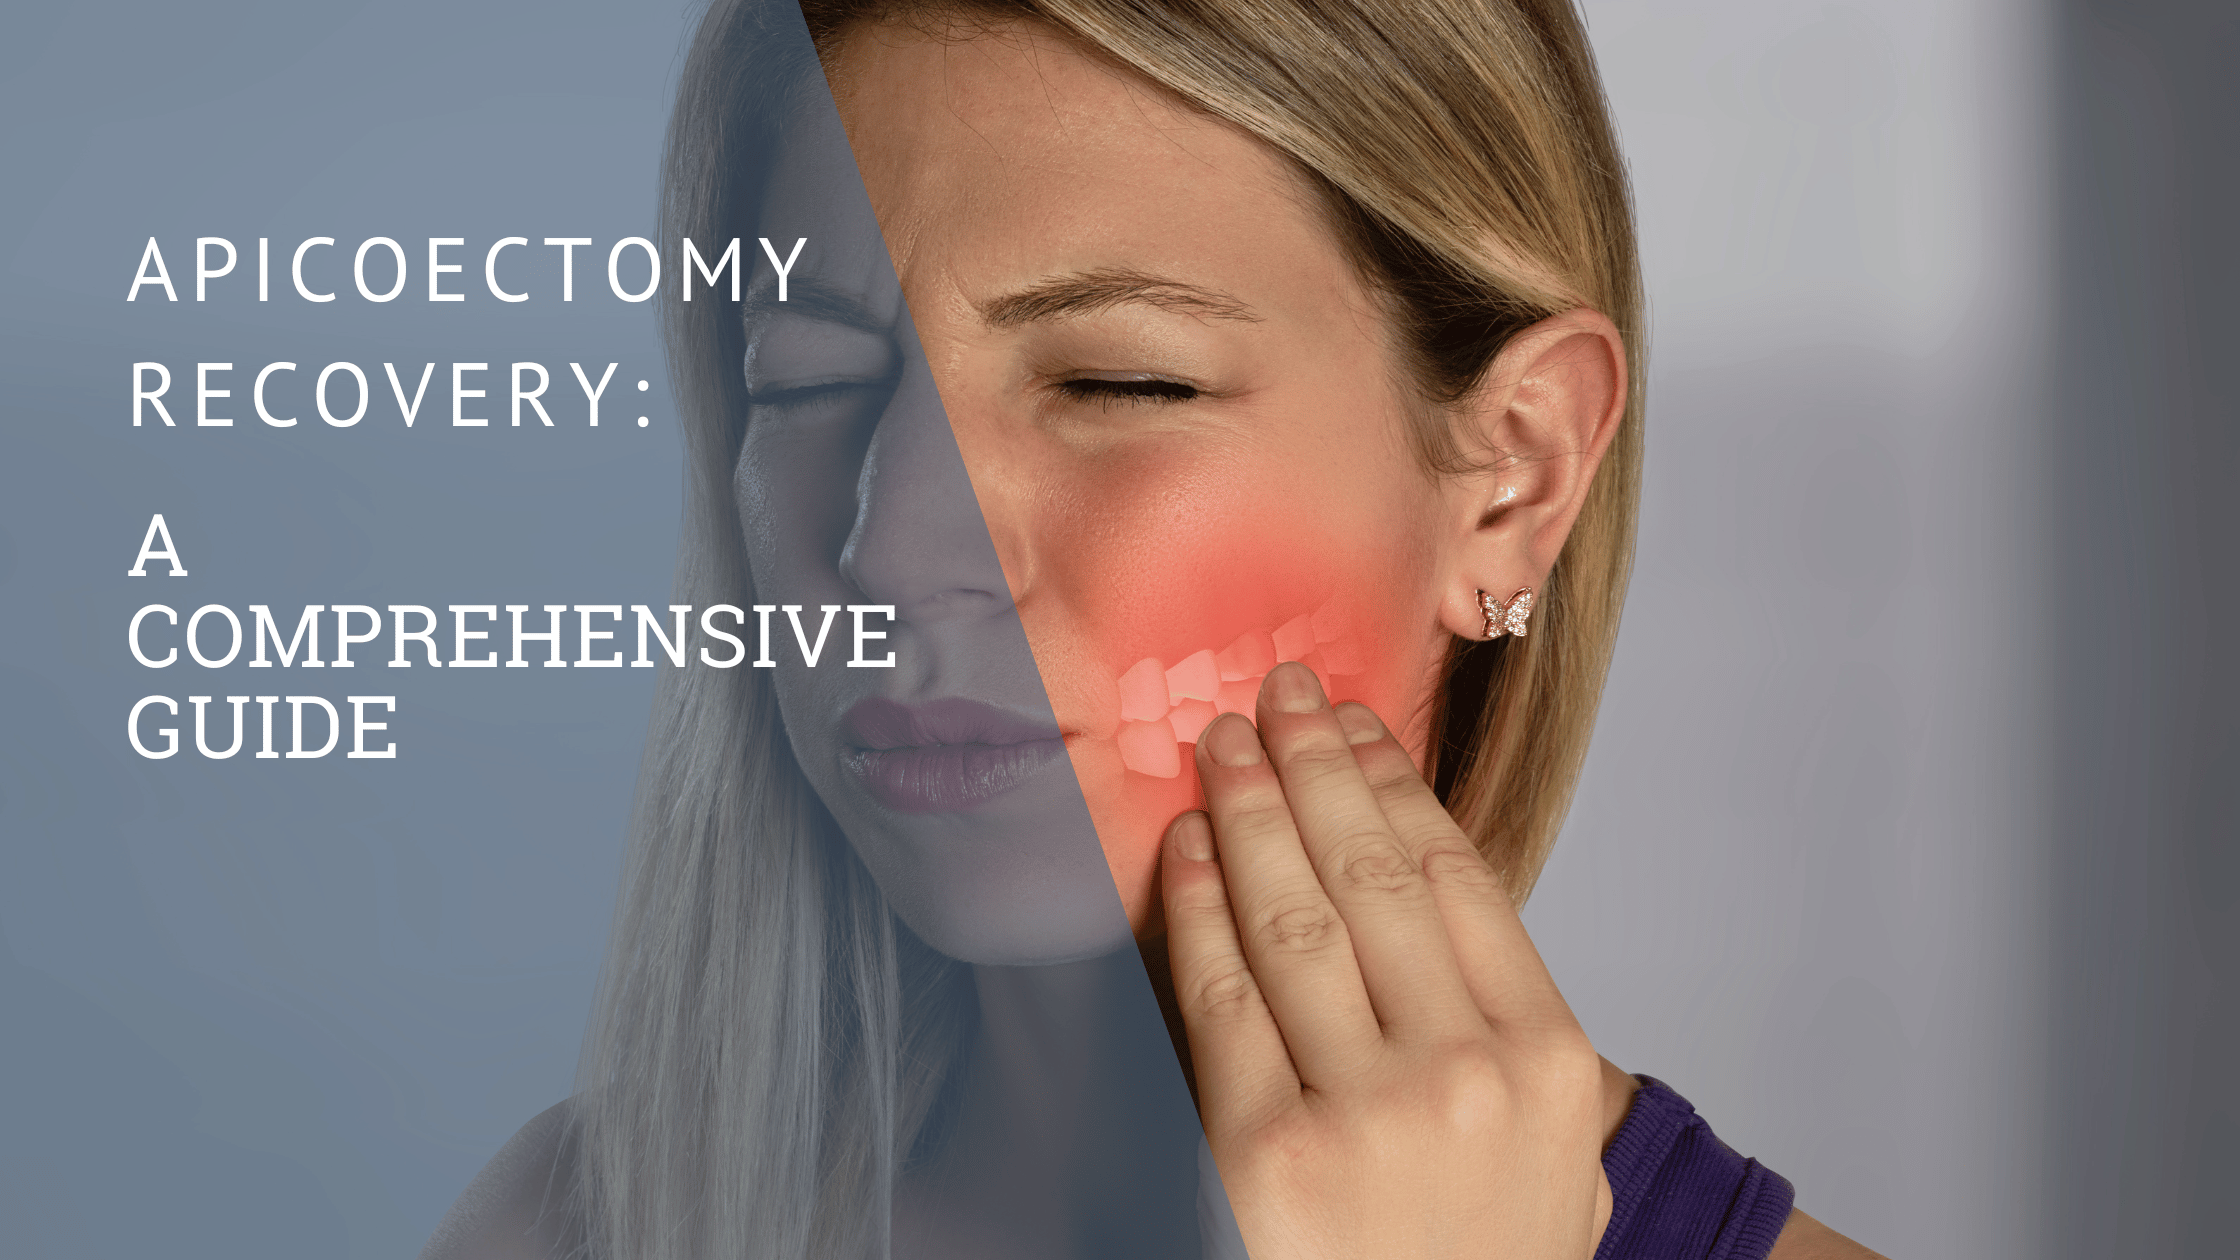 Apicoectomy Recovery